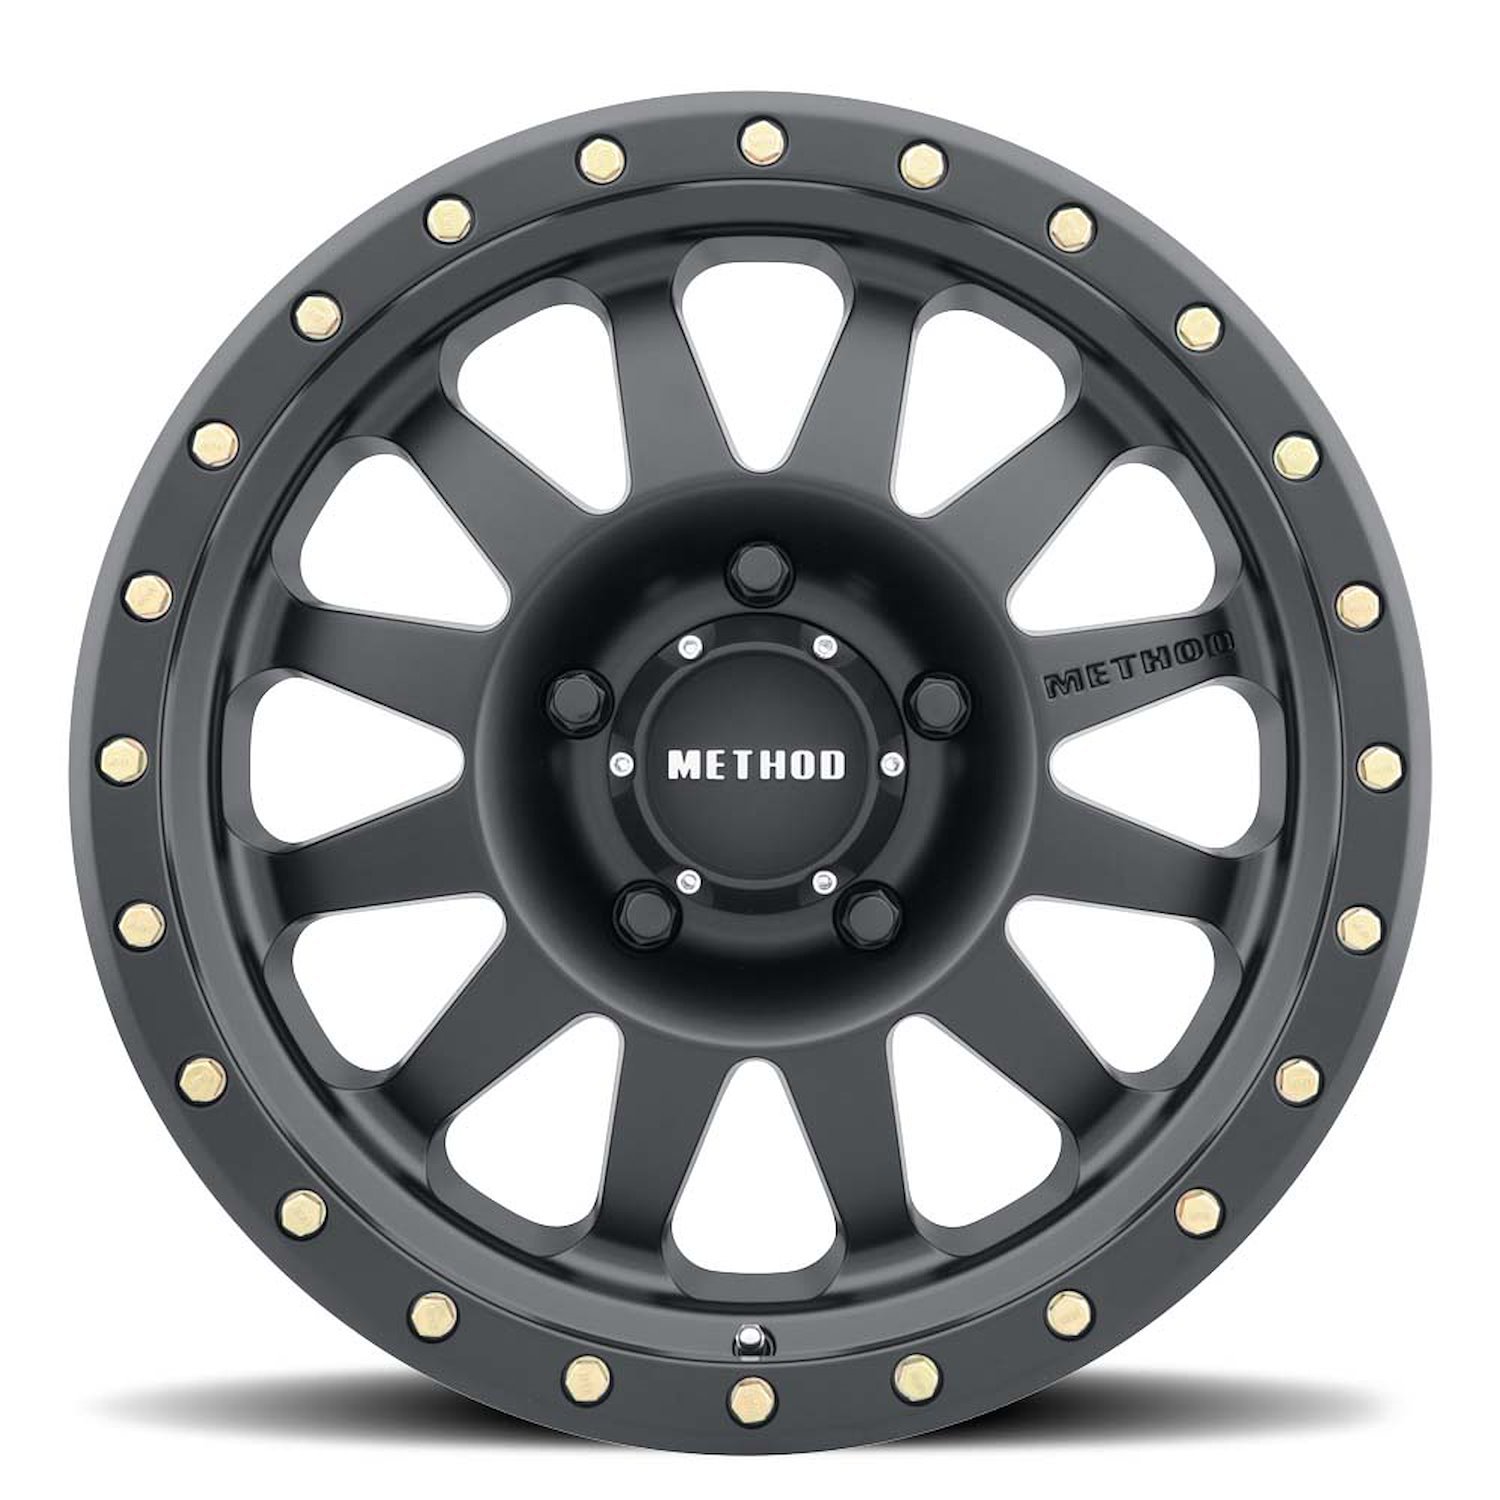 MR30451012550N STREET MR304 Double Standard Wheel [Size: 15" x 10"] Matte Black